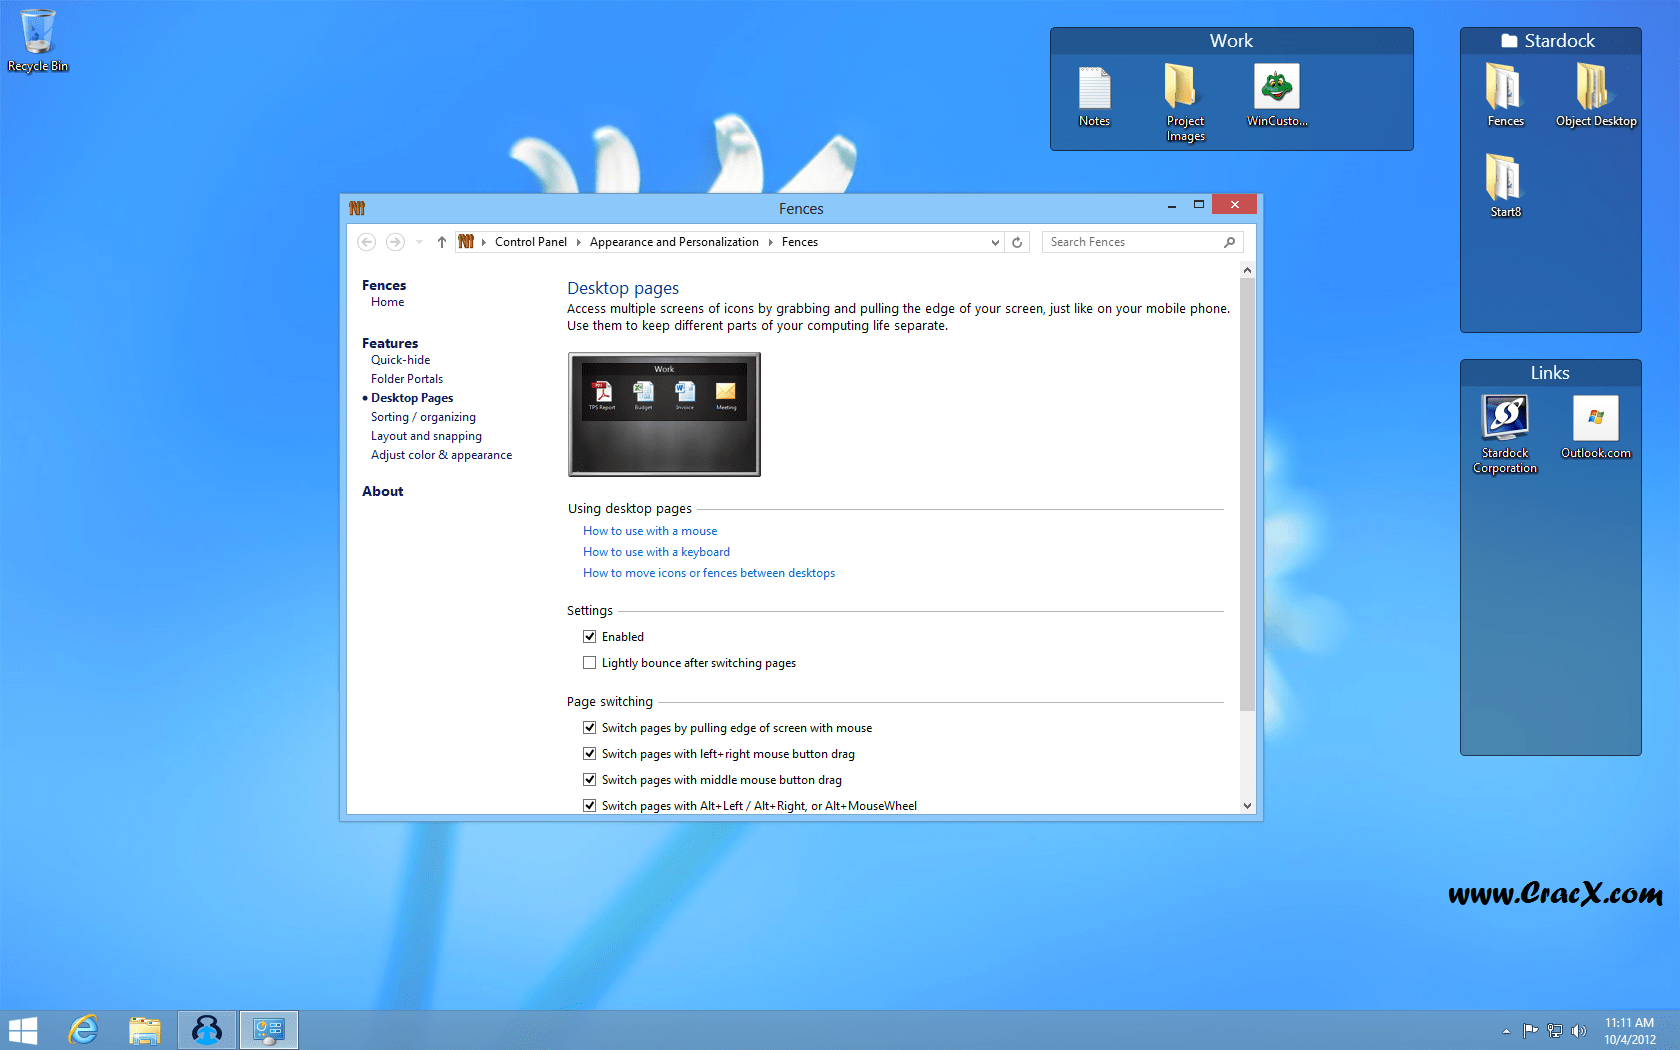 Download Crack For Windows 7